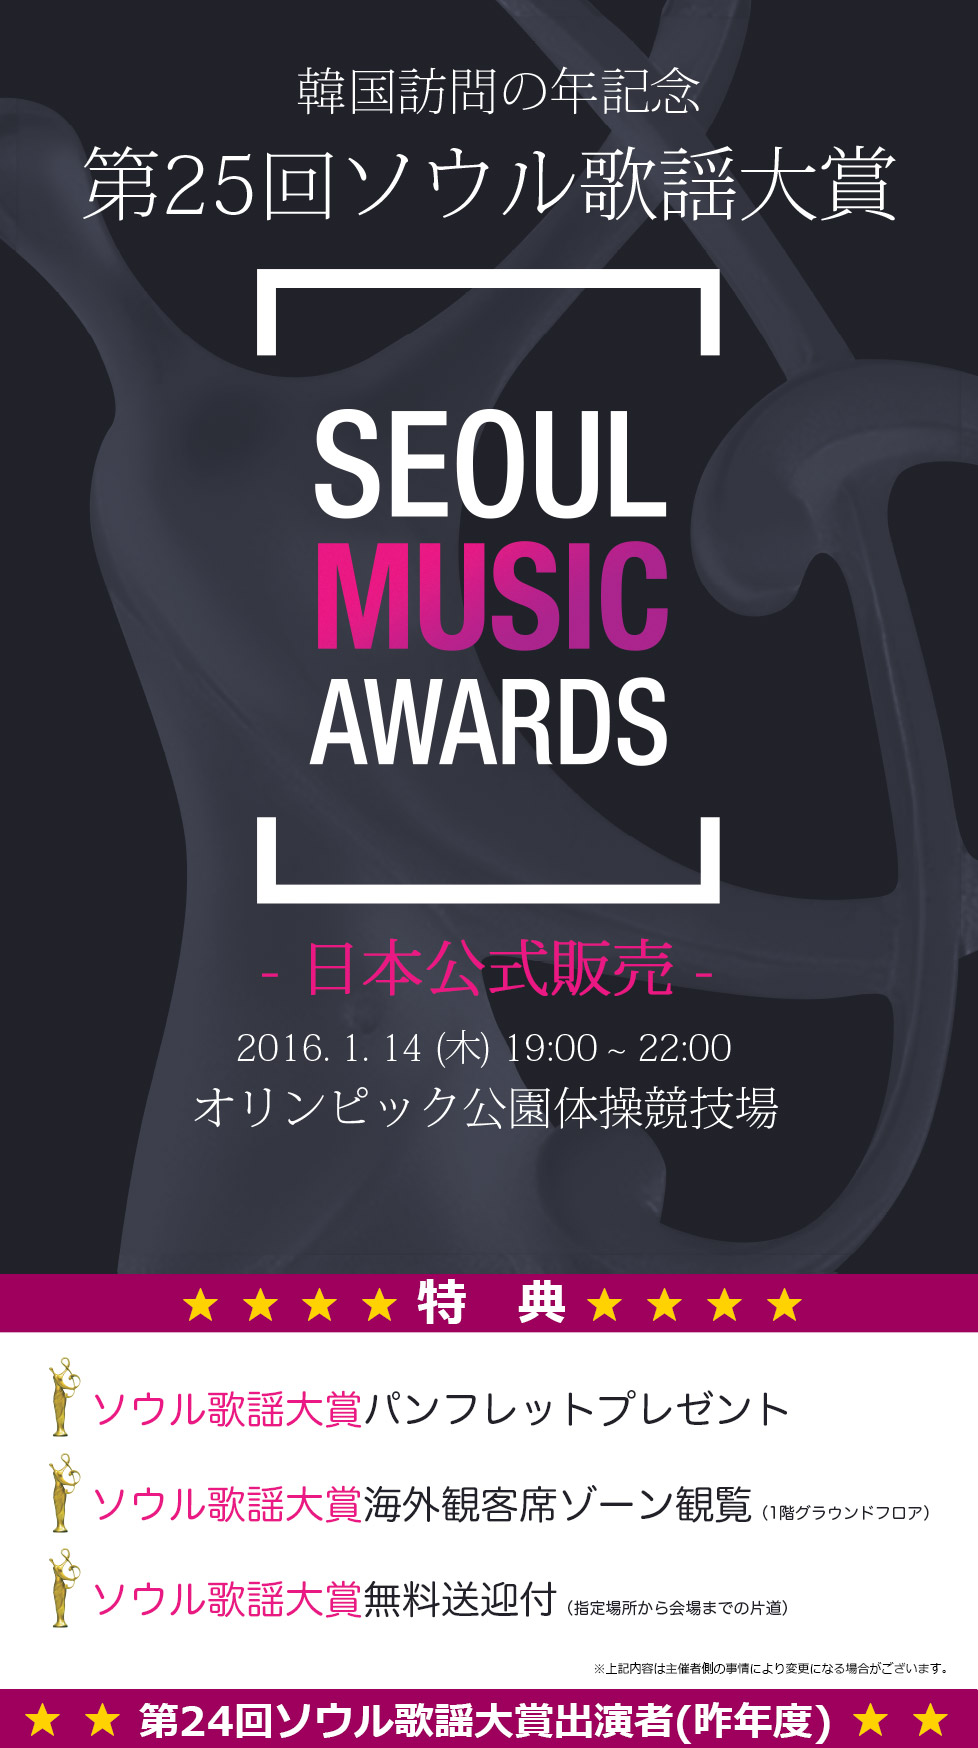 【日本公式販売】第25回ソウル歌謡大賞 (The 25th SEOUL MUSIC AWARDS)